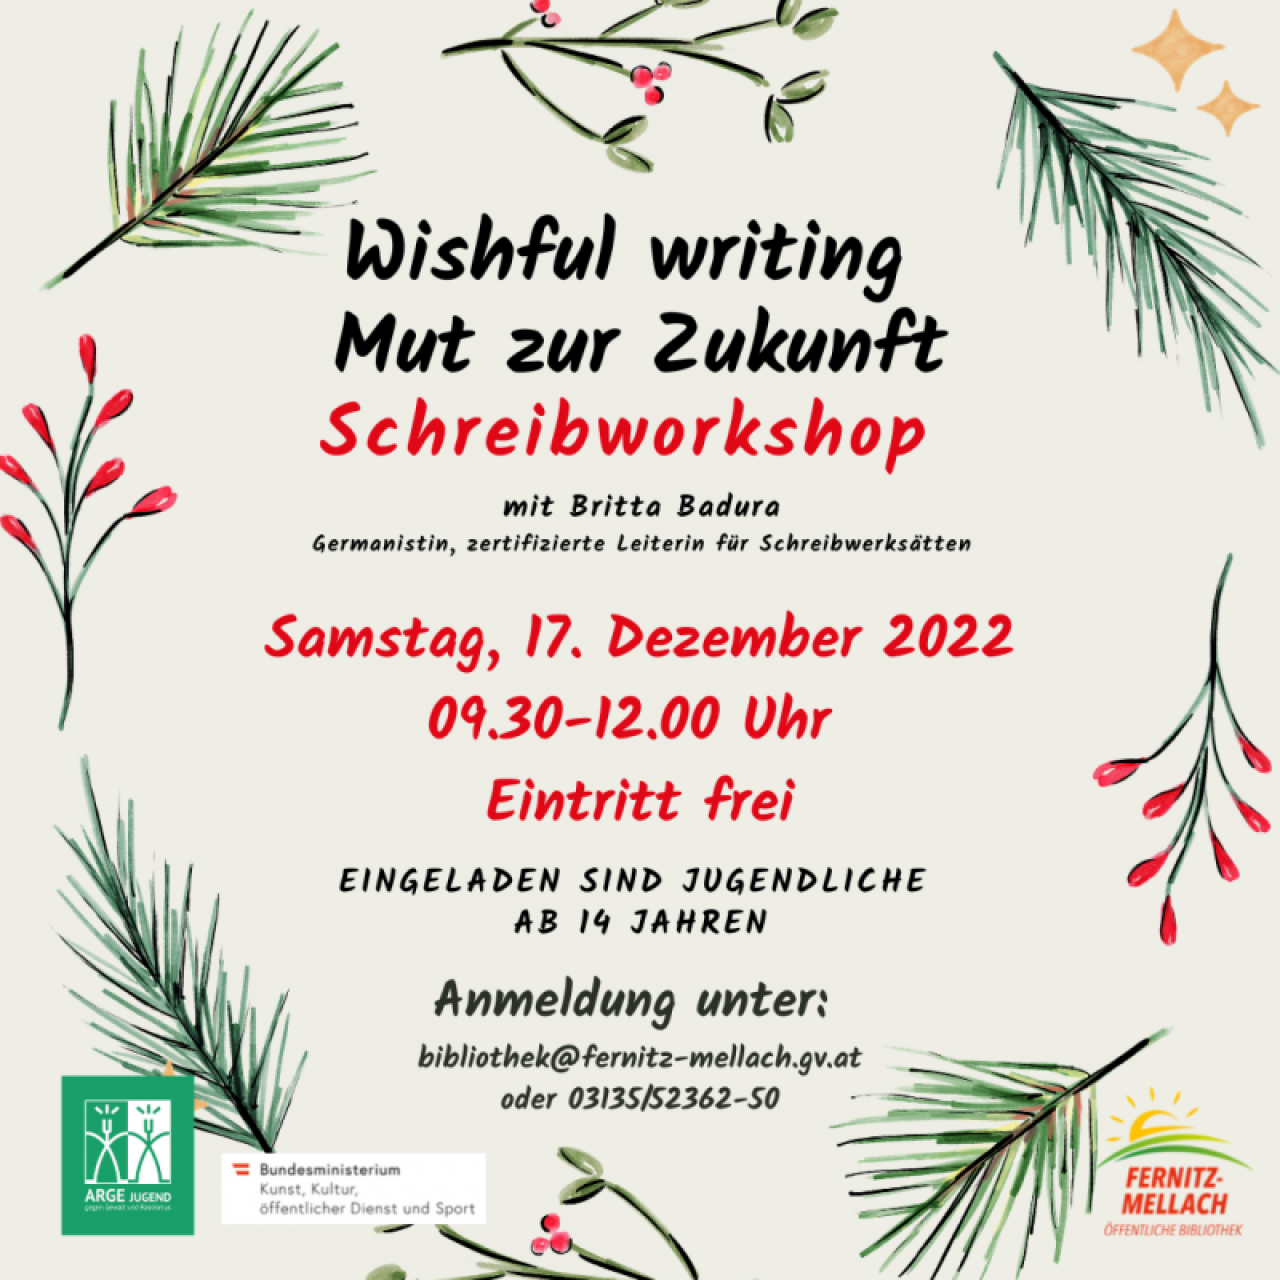 Plakat: Wishful writing - Mut zur Zukunft - Schreibworkshop